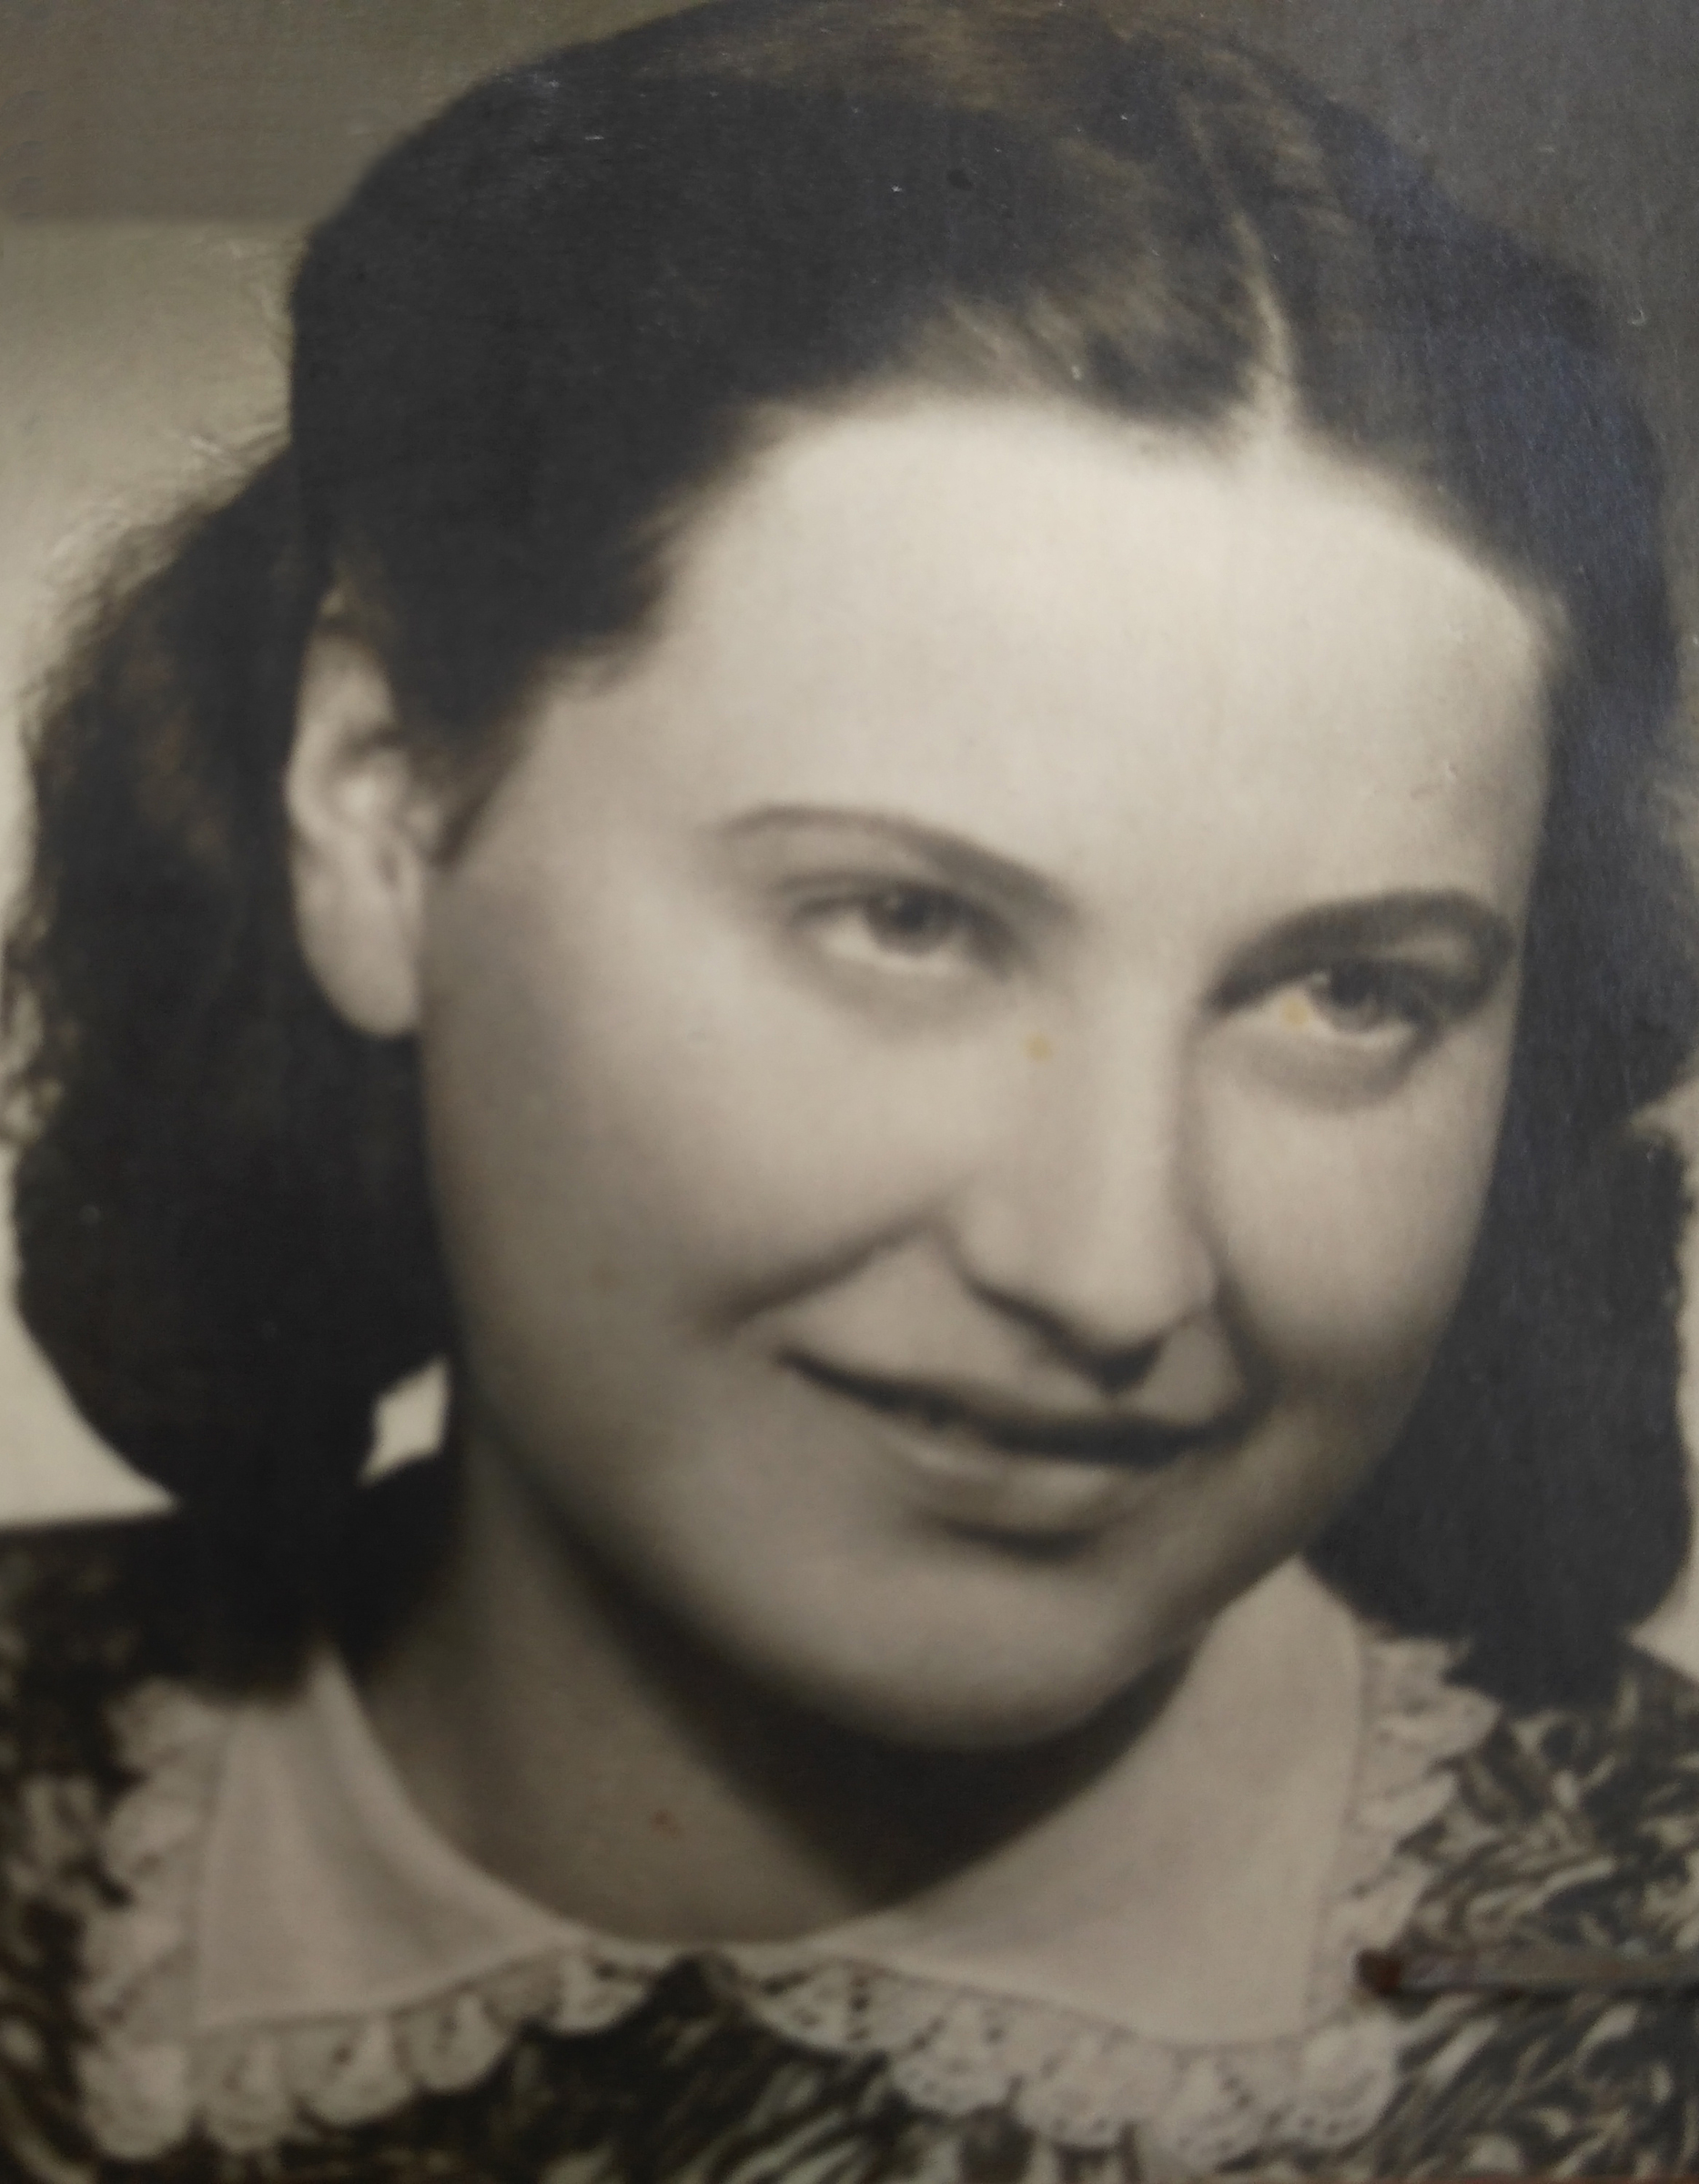 Eva Mosnáková at young age